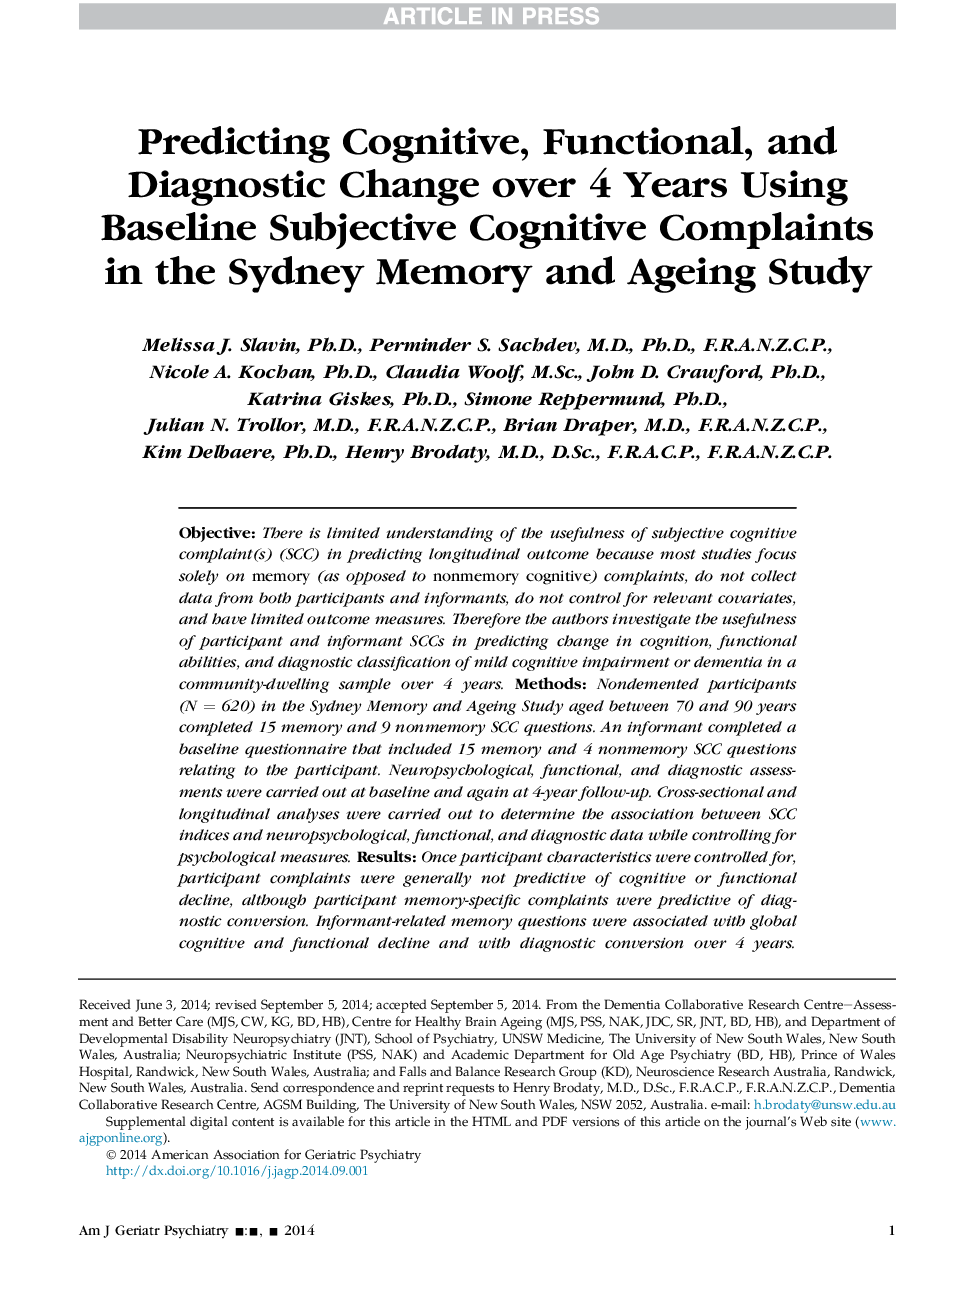 پیش بینی تغییرات شناختی، عملکردی و تشخیصی در طی 4 سال با استفاده از شکایت های شناختی ذهنی پایه در آمریکا، حافظه سیدنی و مطالعه پیری 